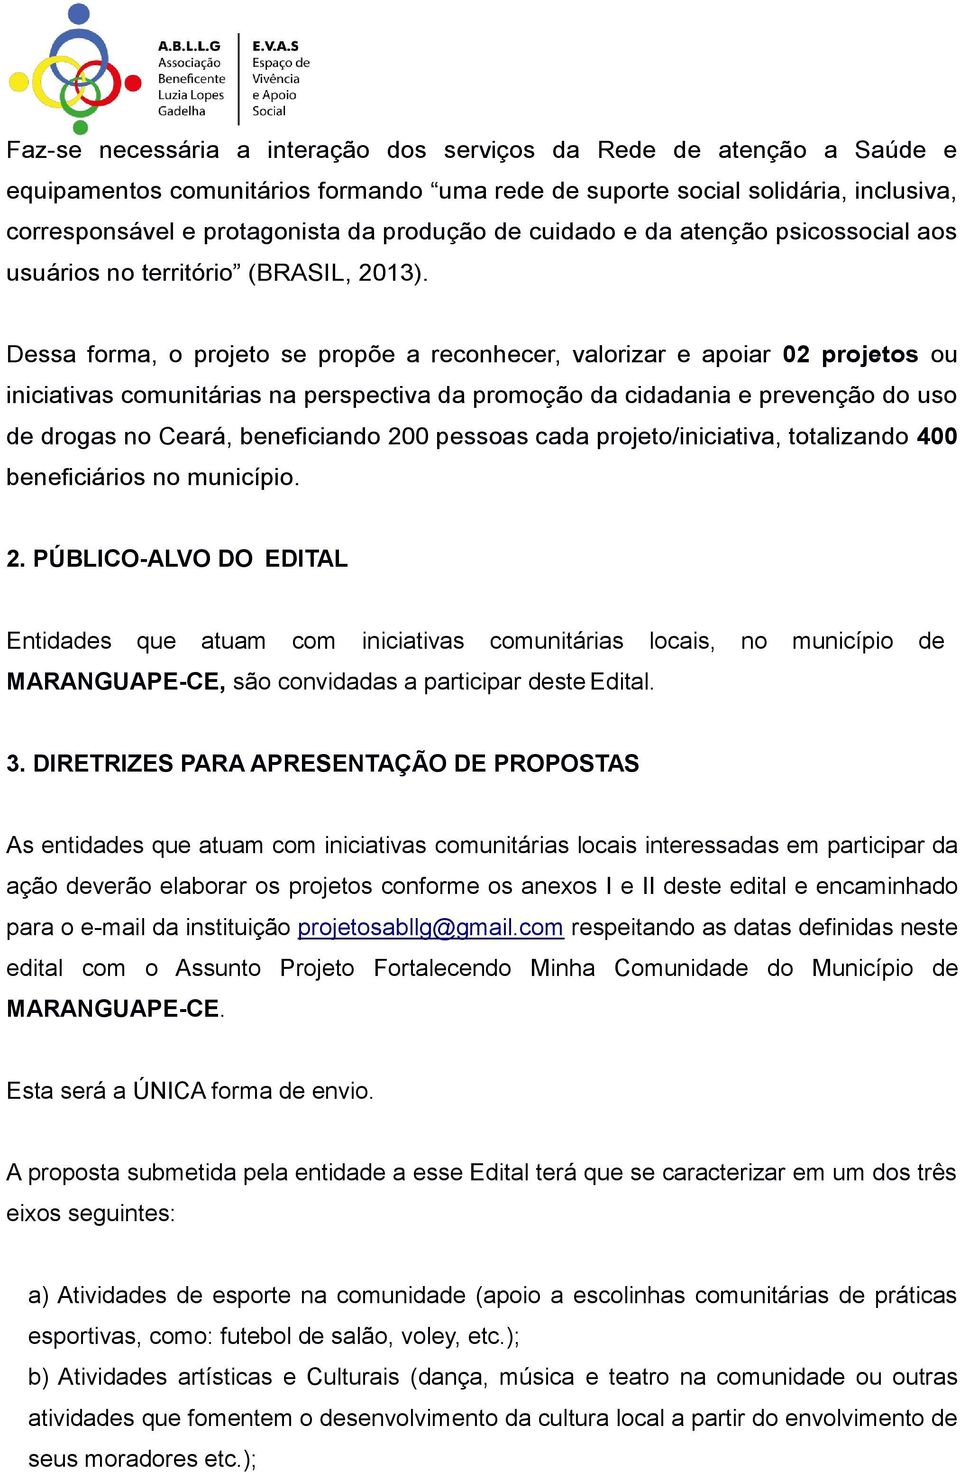 Dessa forma, o projeto se propõe a reconhecer, valorizar e apoiar 02 projetos ou iniciativas comunitárias na perspectiva da promoção da cidadania e prevenção do uso de drogas no Ceará, beneficiando